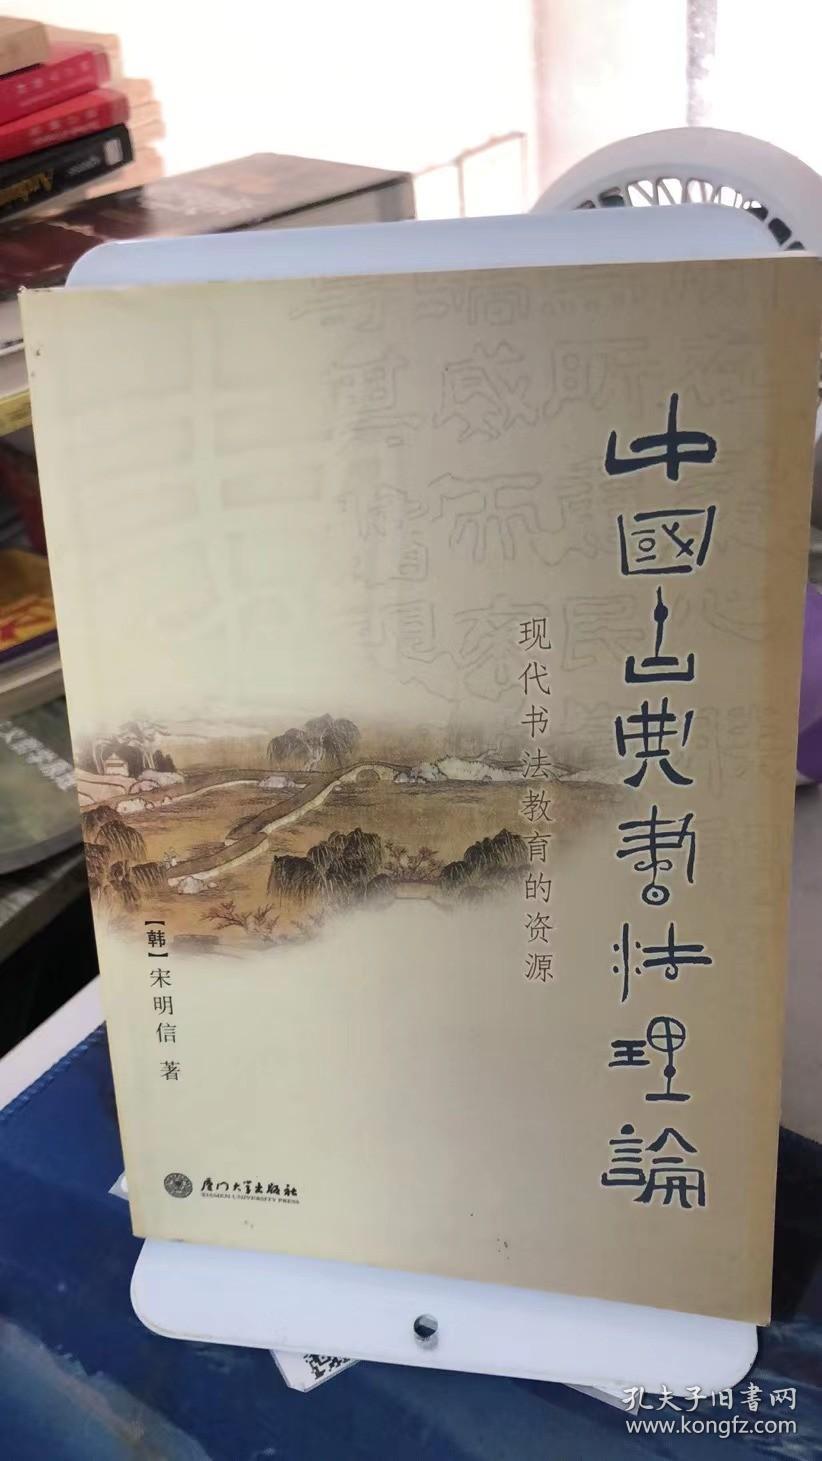 中国古典书法理论:现代书法教育的资源 [韩]宋明信 著  厦门大学出版社  9787561523445